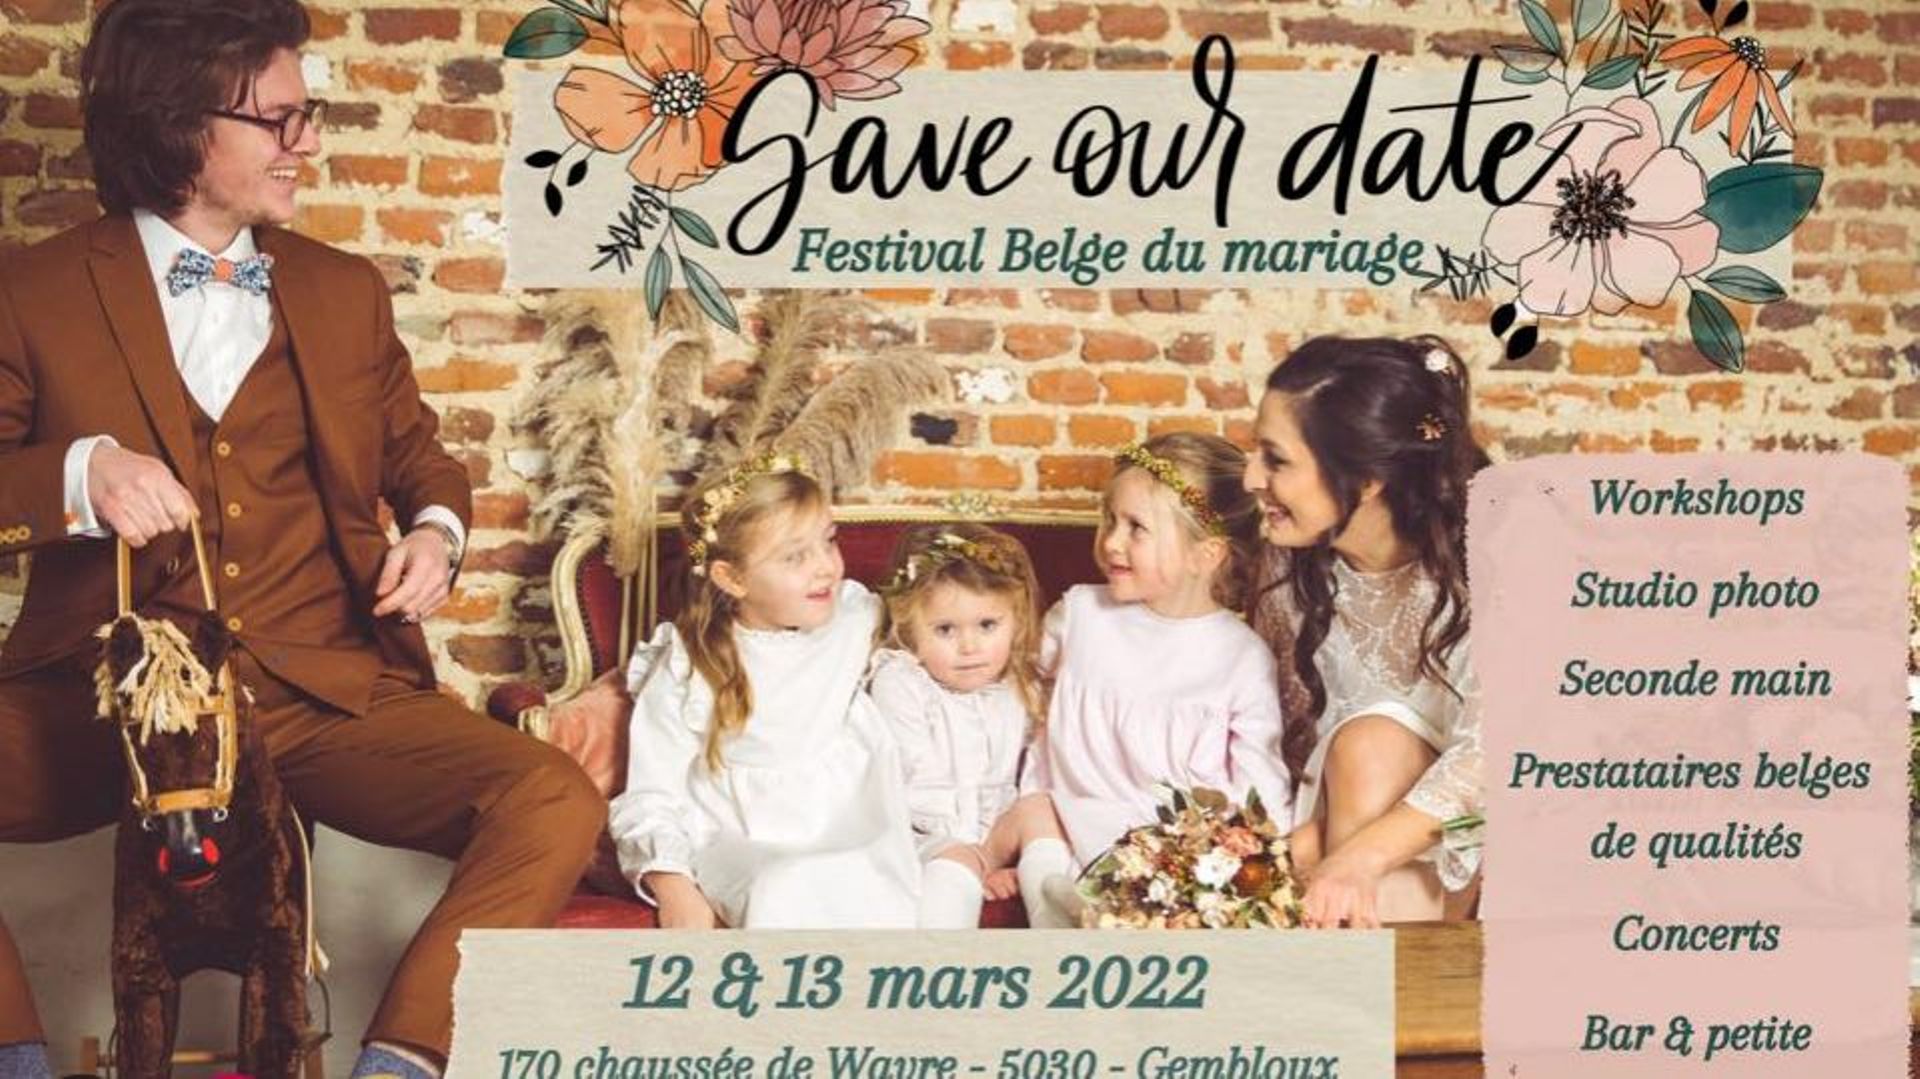 Festival belge du mariage "Save our date" à Hors-Champs